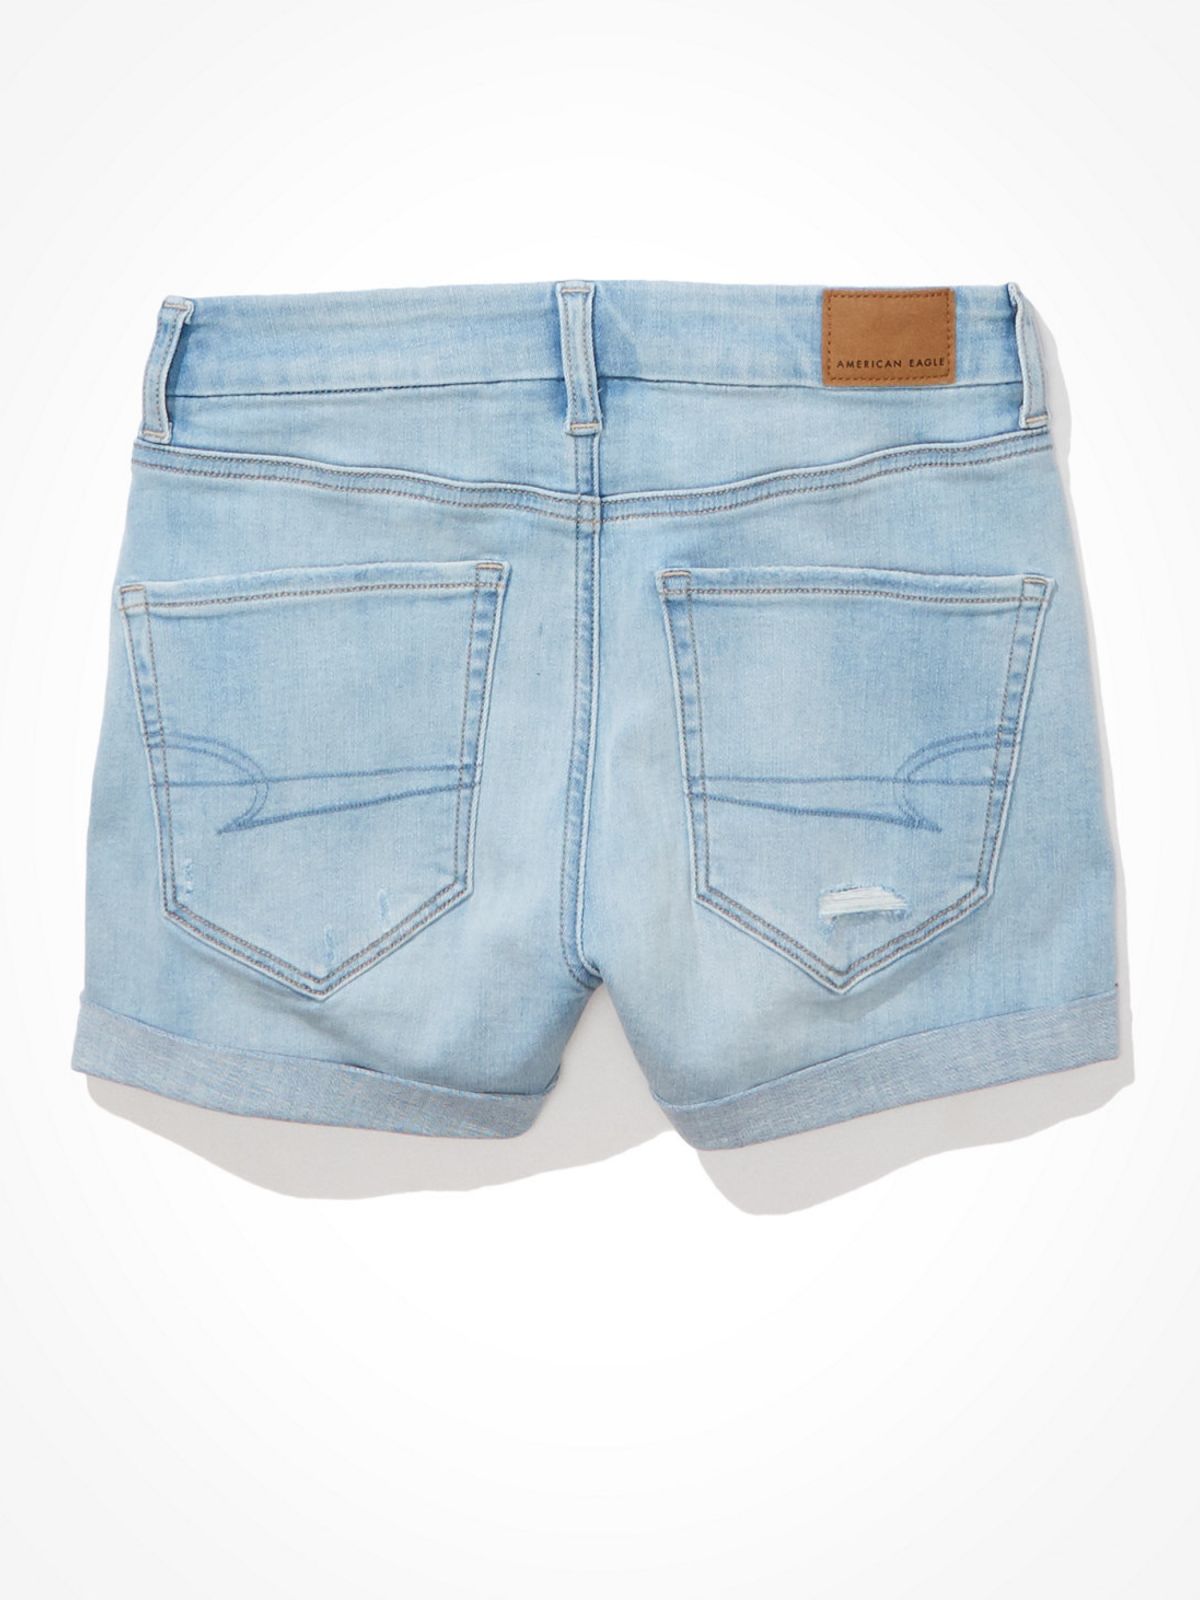  ג'ינס קצר בסיומת קיפול / נשים של AMERICAN EAGLE